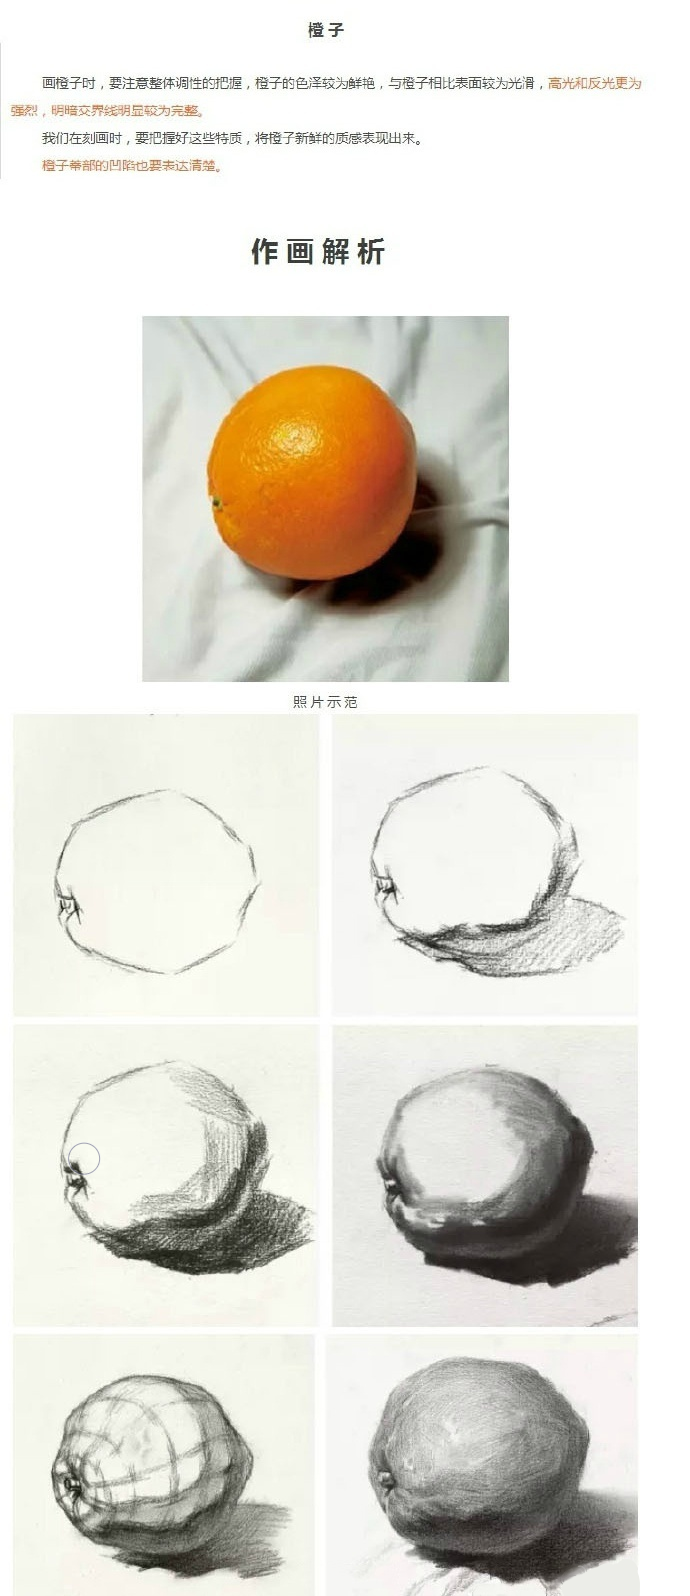 画素描把橘子画得丑陋不堪,怒撕画纸后,果然画得比以前好